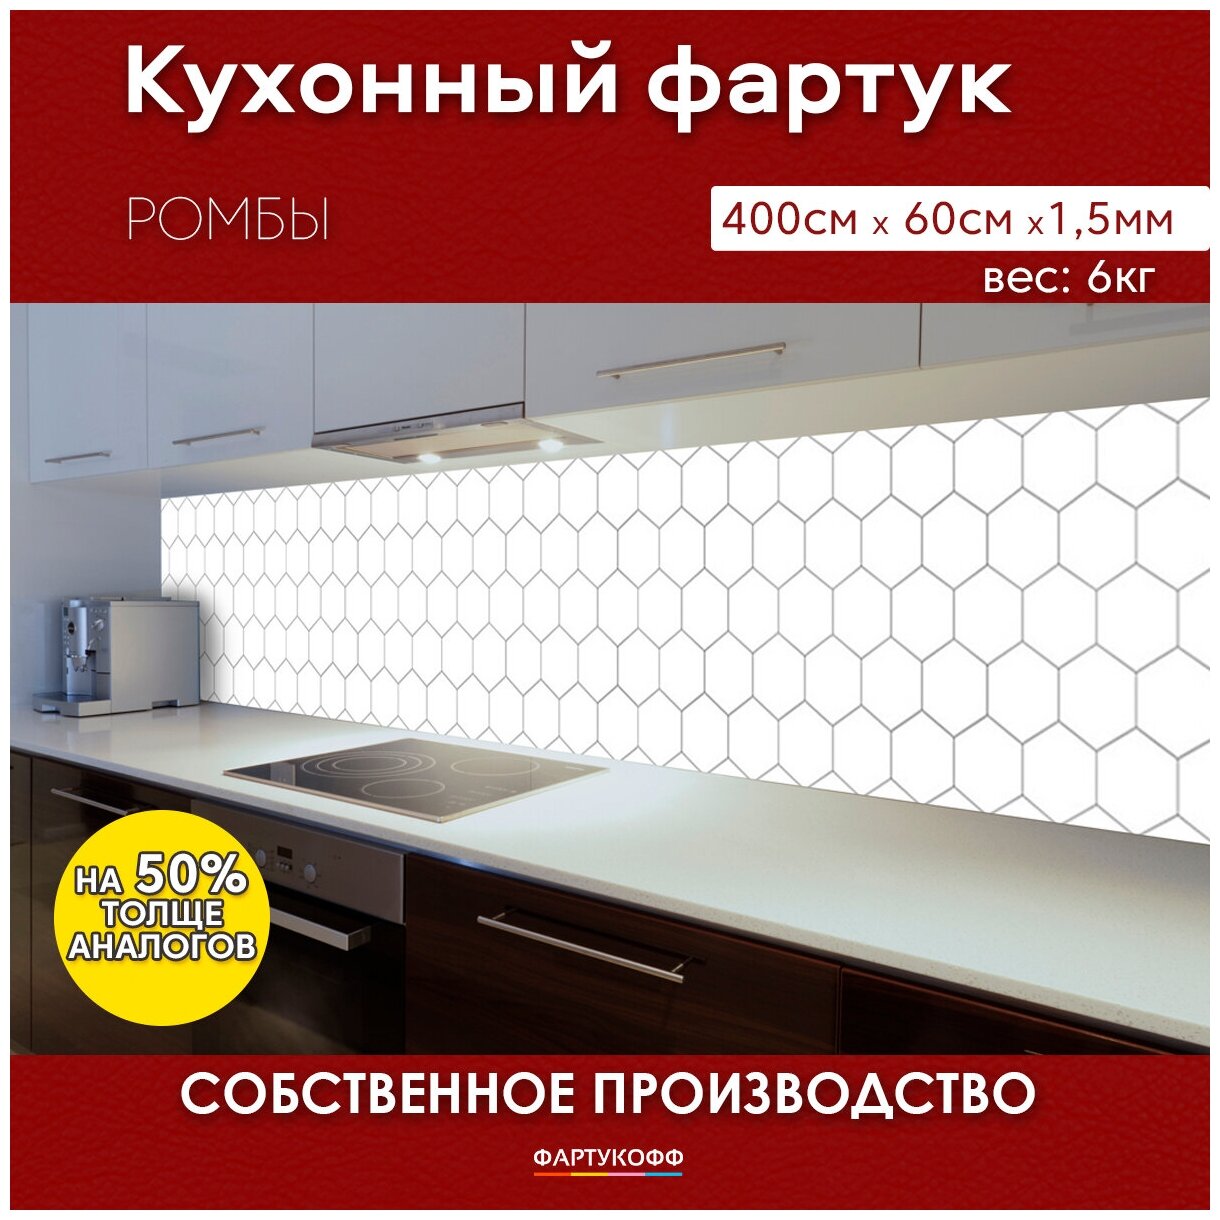 Кухонный фартук с 3D покрытием "Ромбы" 4000*600*1,5 мм, АБС пластик, термоперевод